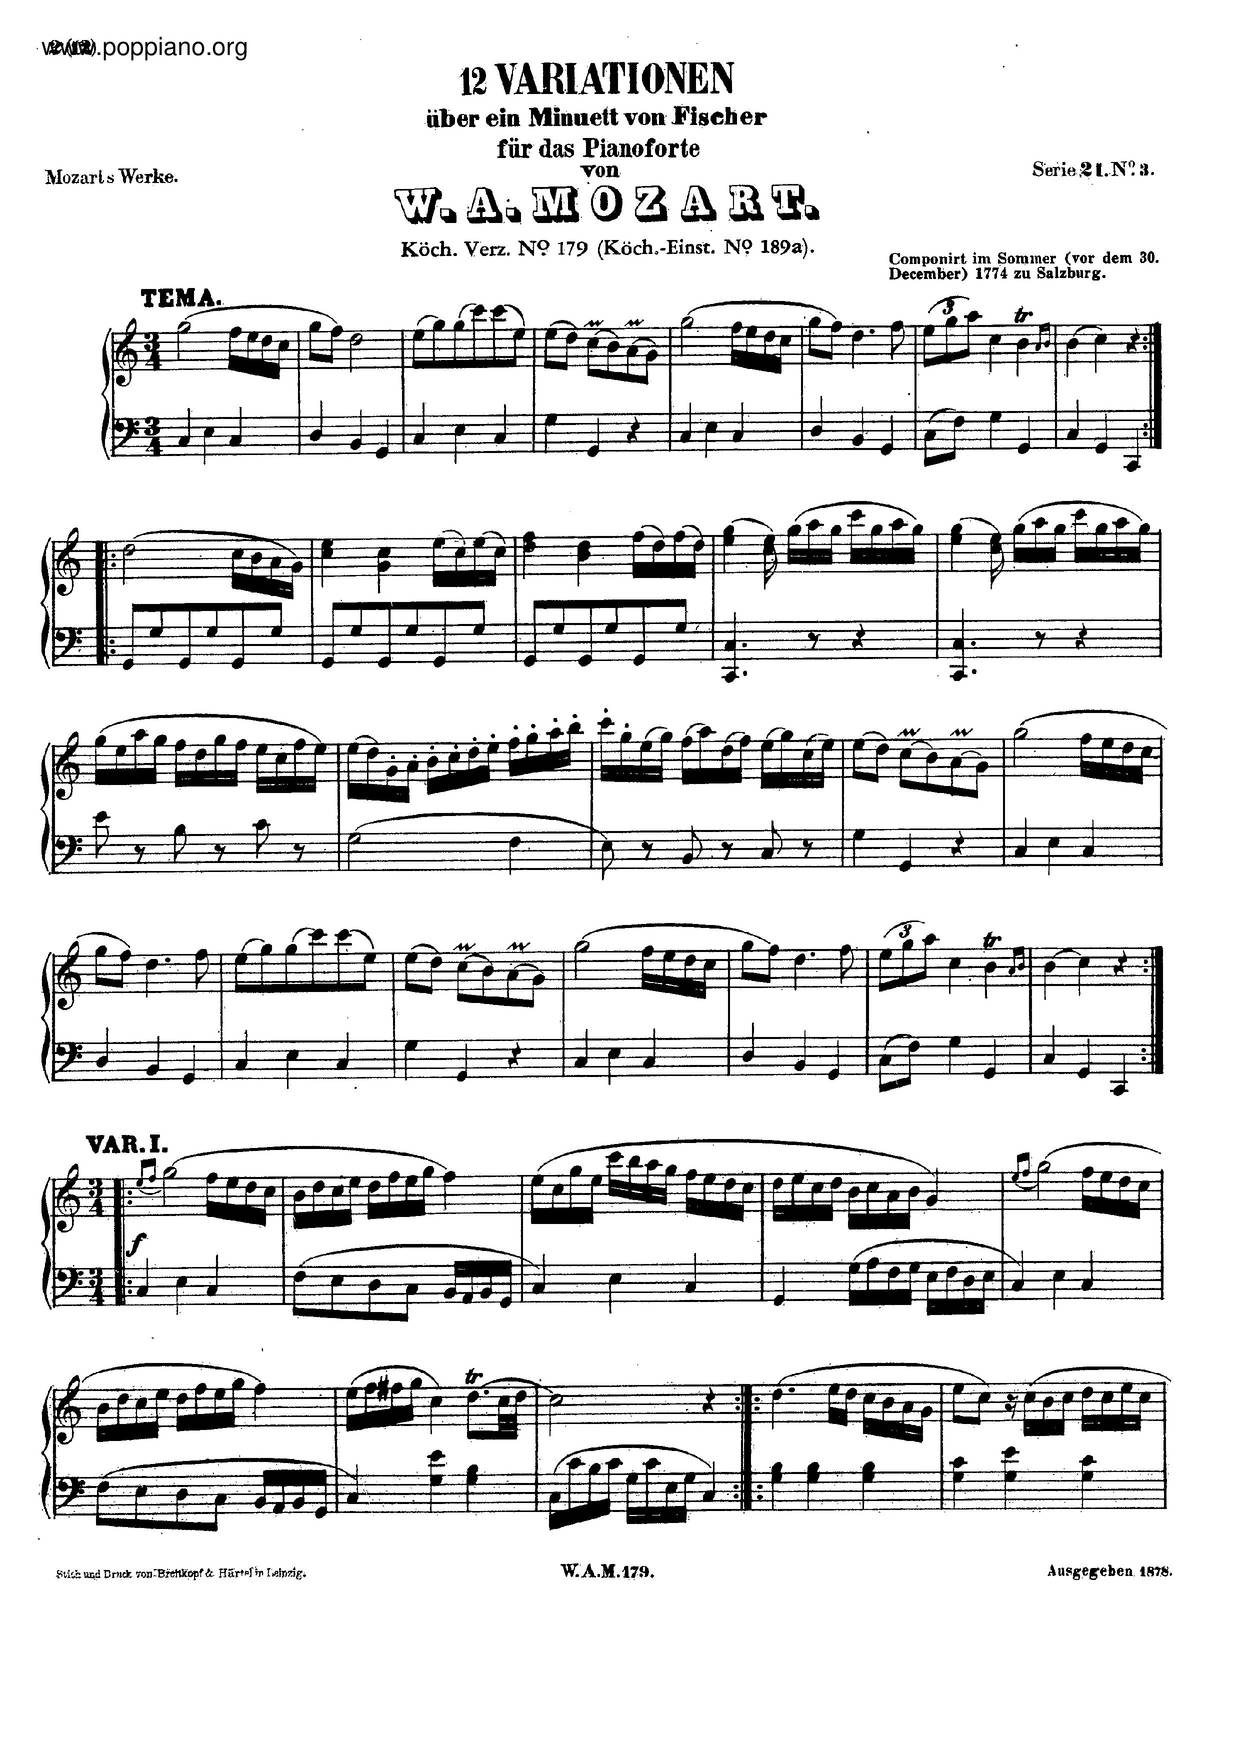 12 Variations On A Minuet By Fischer, K. 179/189A琴谱